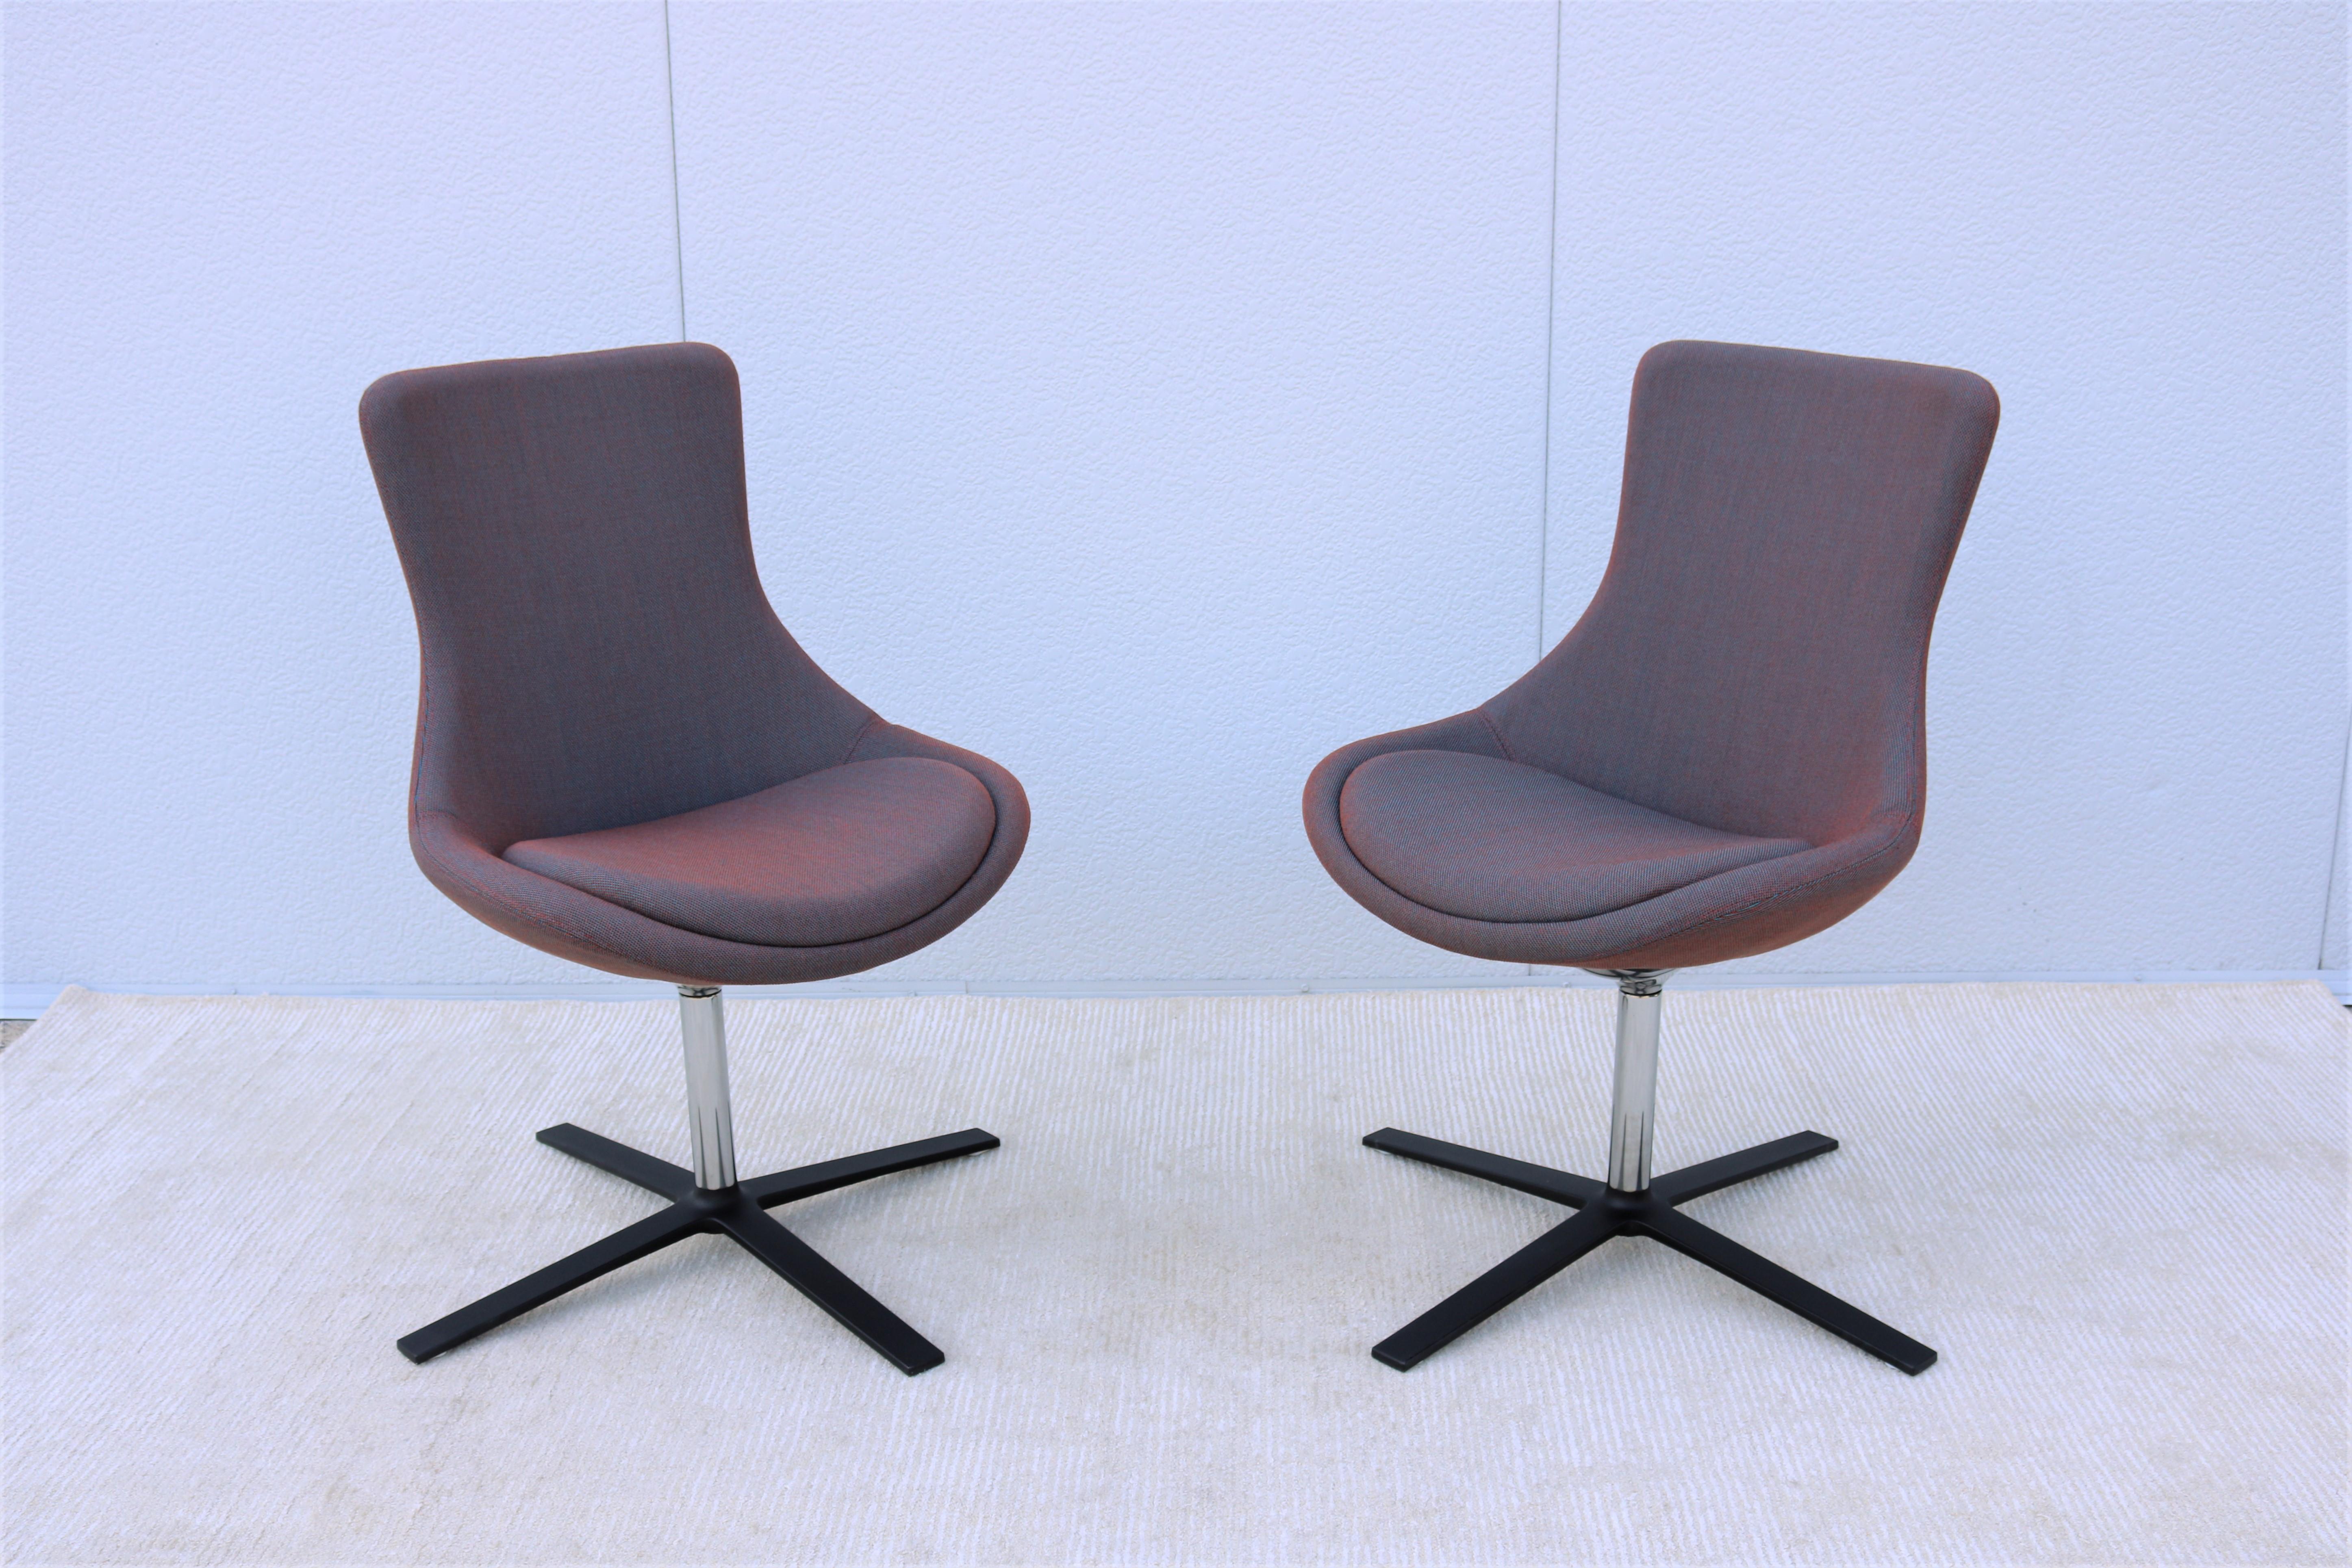 Américain Paire de chaises d'appoint pour invités Orangebox Bloom, modernes et contemporaines, pivotantes et inclinables en vente